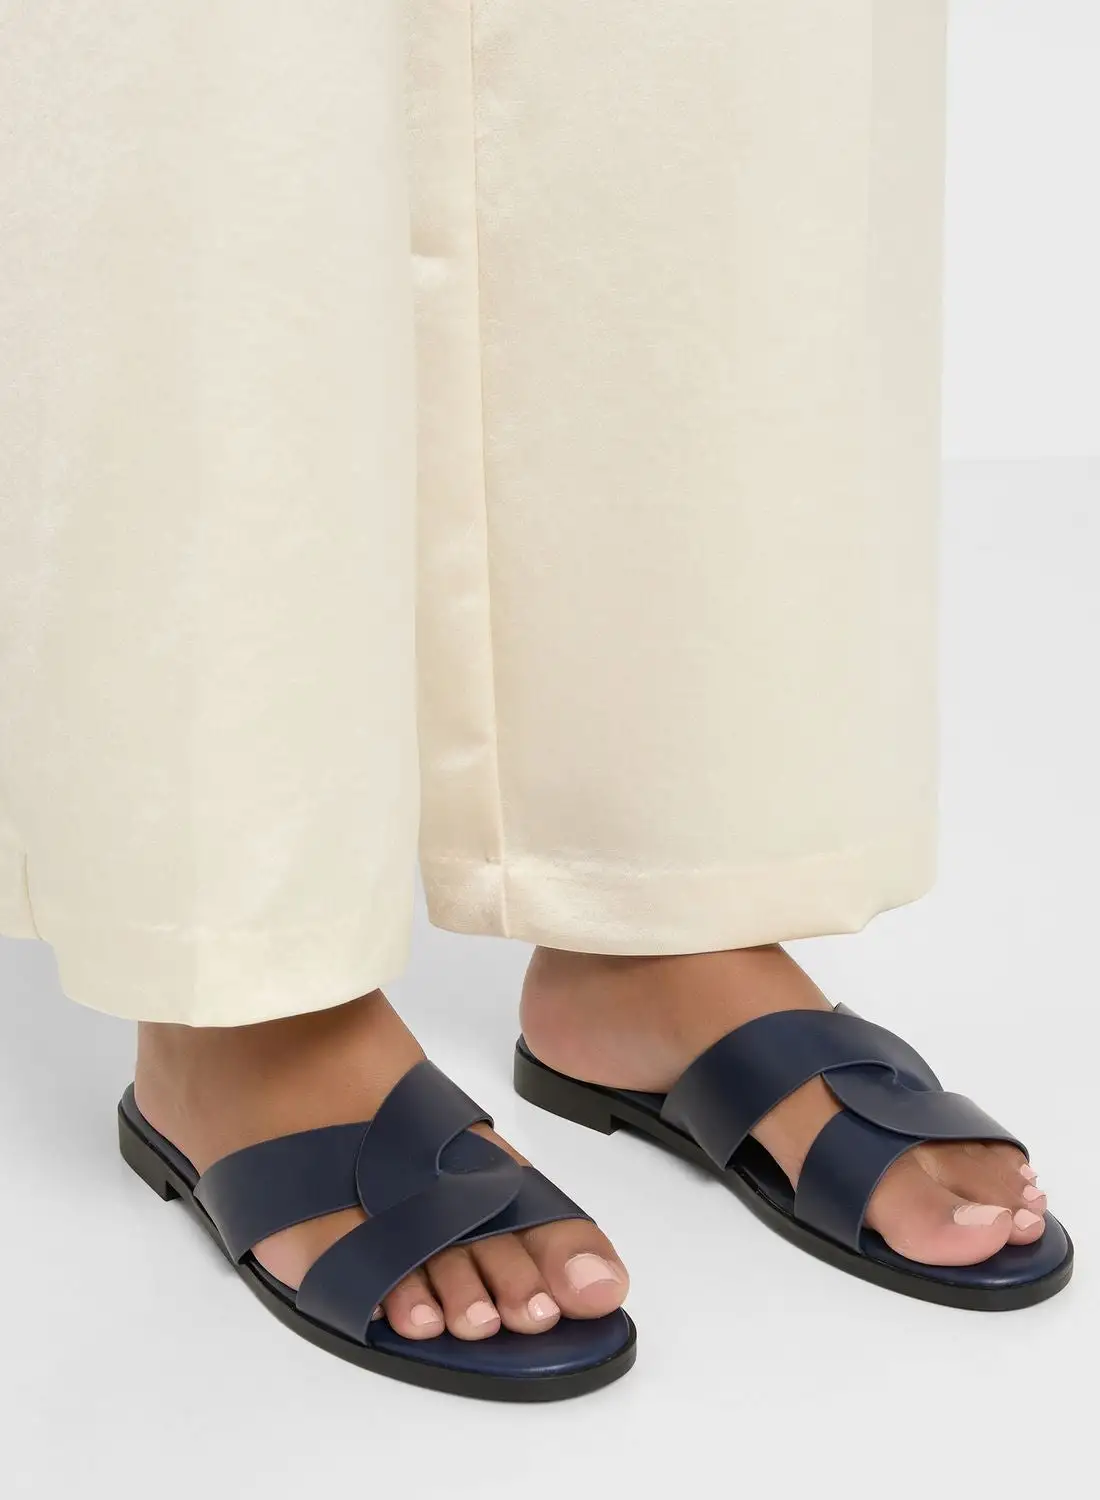 Khizana Interwoven Strap Flat Sandal